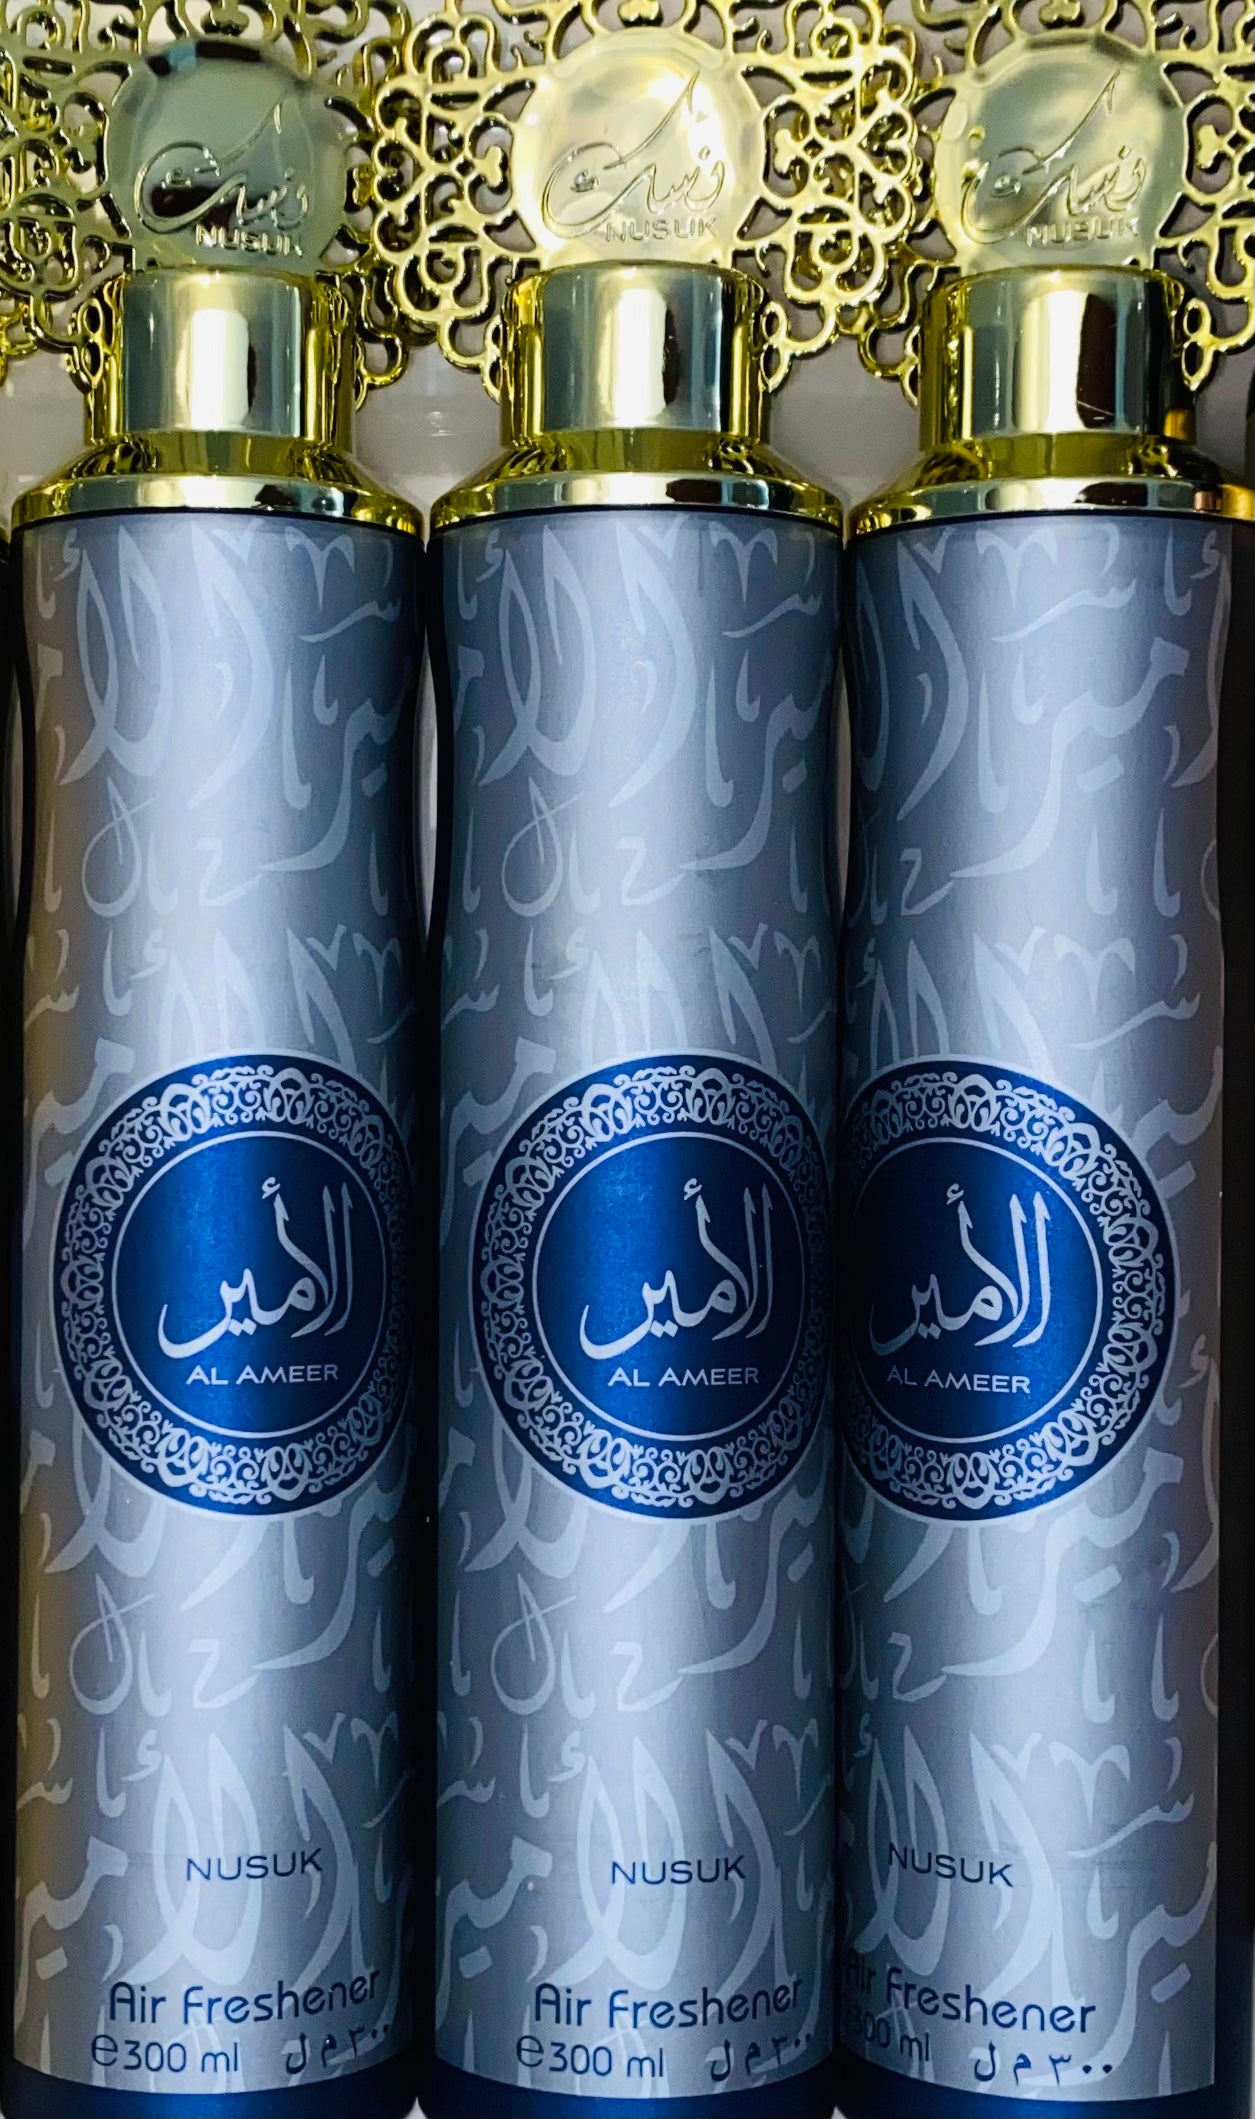 Al Ameer Nusuk Air Freshener